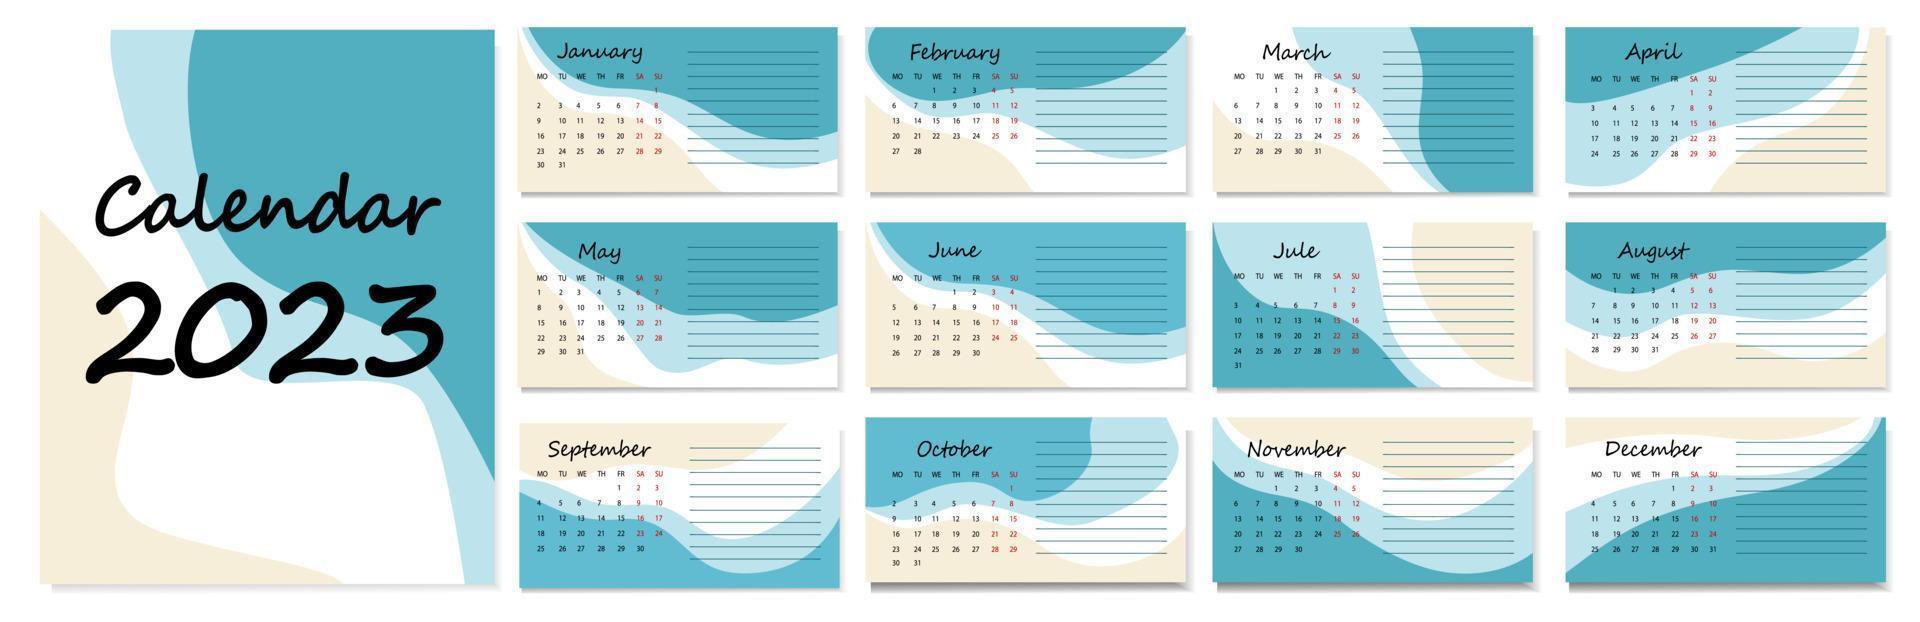 calendario vectorial horizontal, diseño abstracto. calendario para 2023 sobre un fondo blanco para organizaciones y empresas. formulario para tareas. la semana empieza el lunes. vector